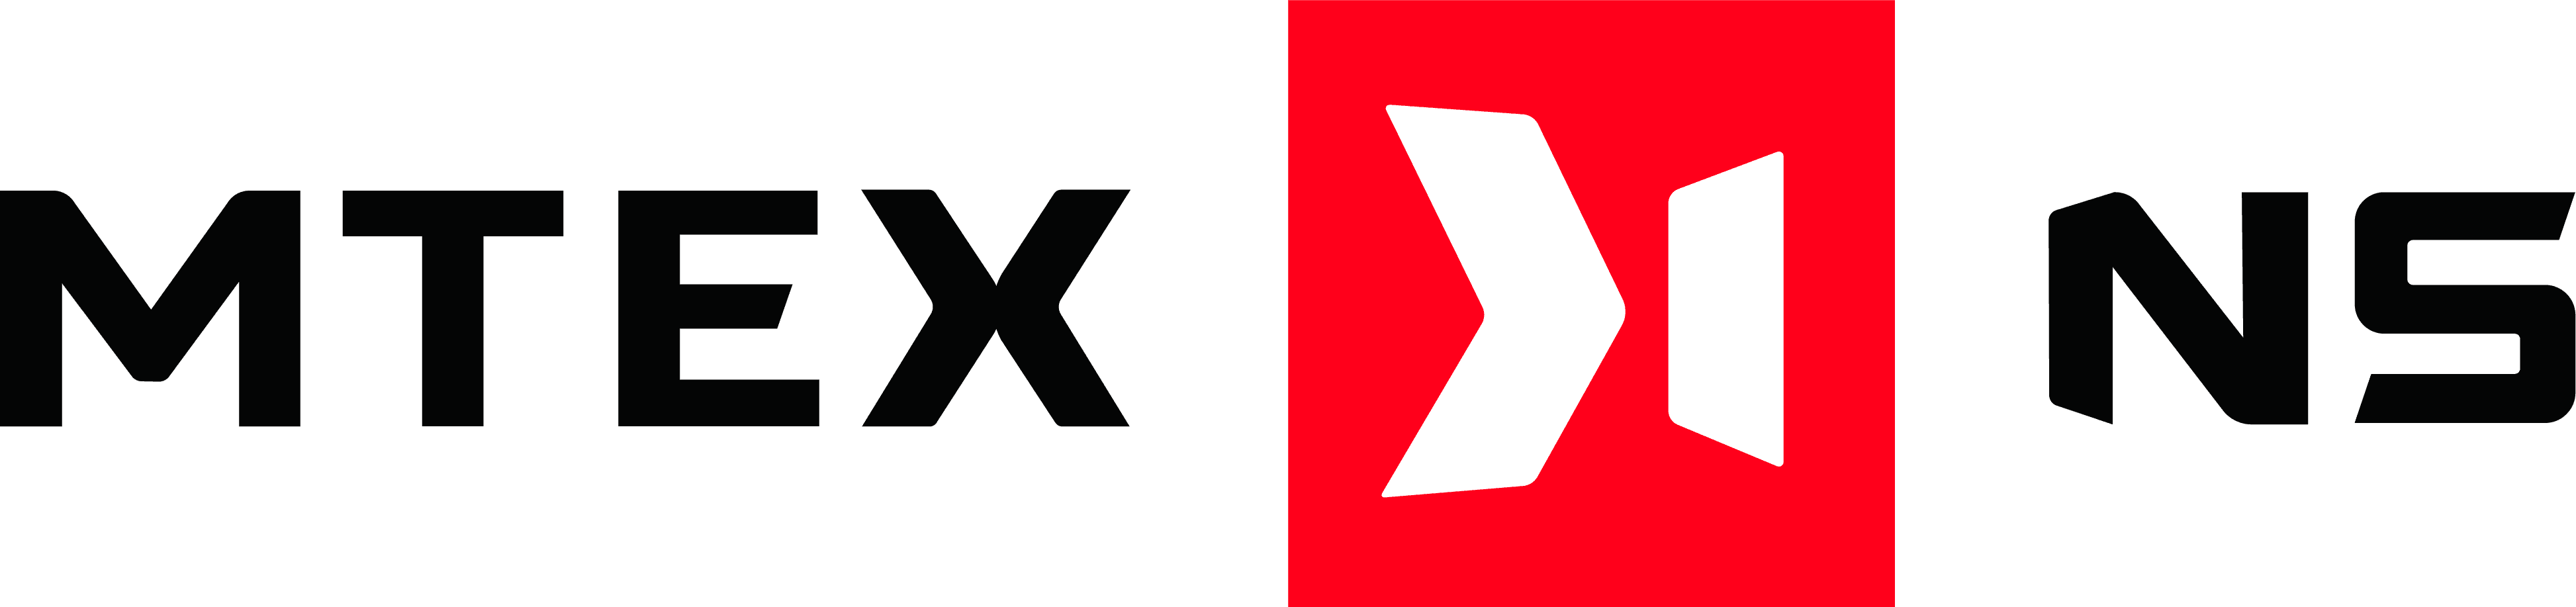 Mtex logo 01